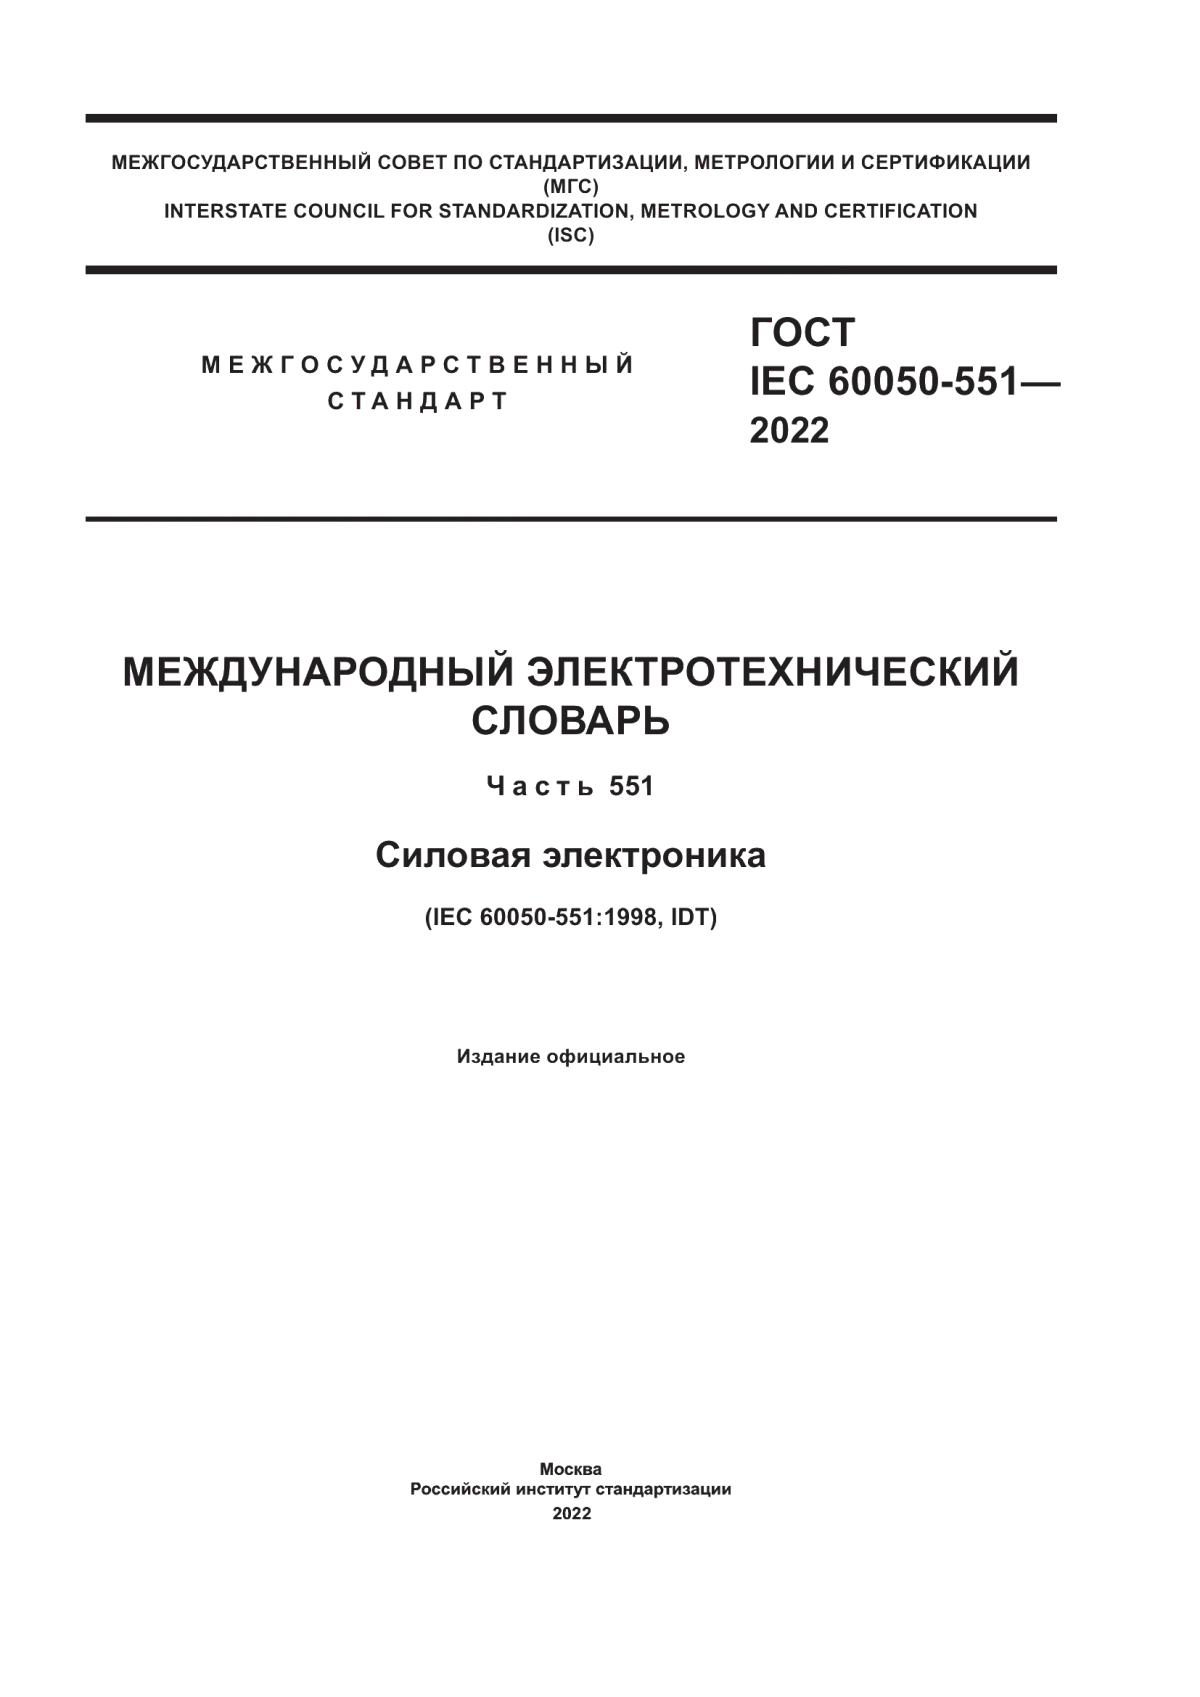 ГОСТ IEC 60050-551-2022 Международный электротехнический словарь. Часть 551. Силовая электроника